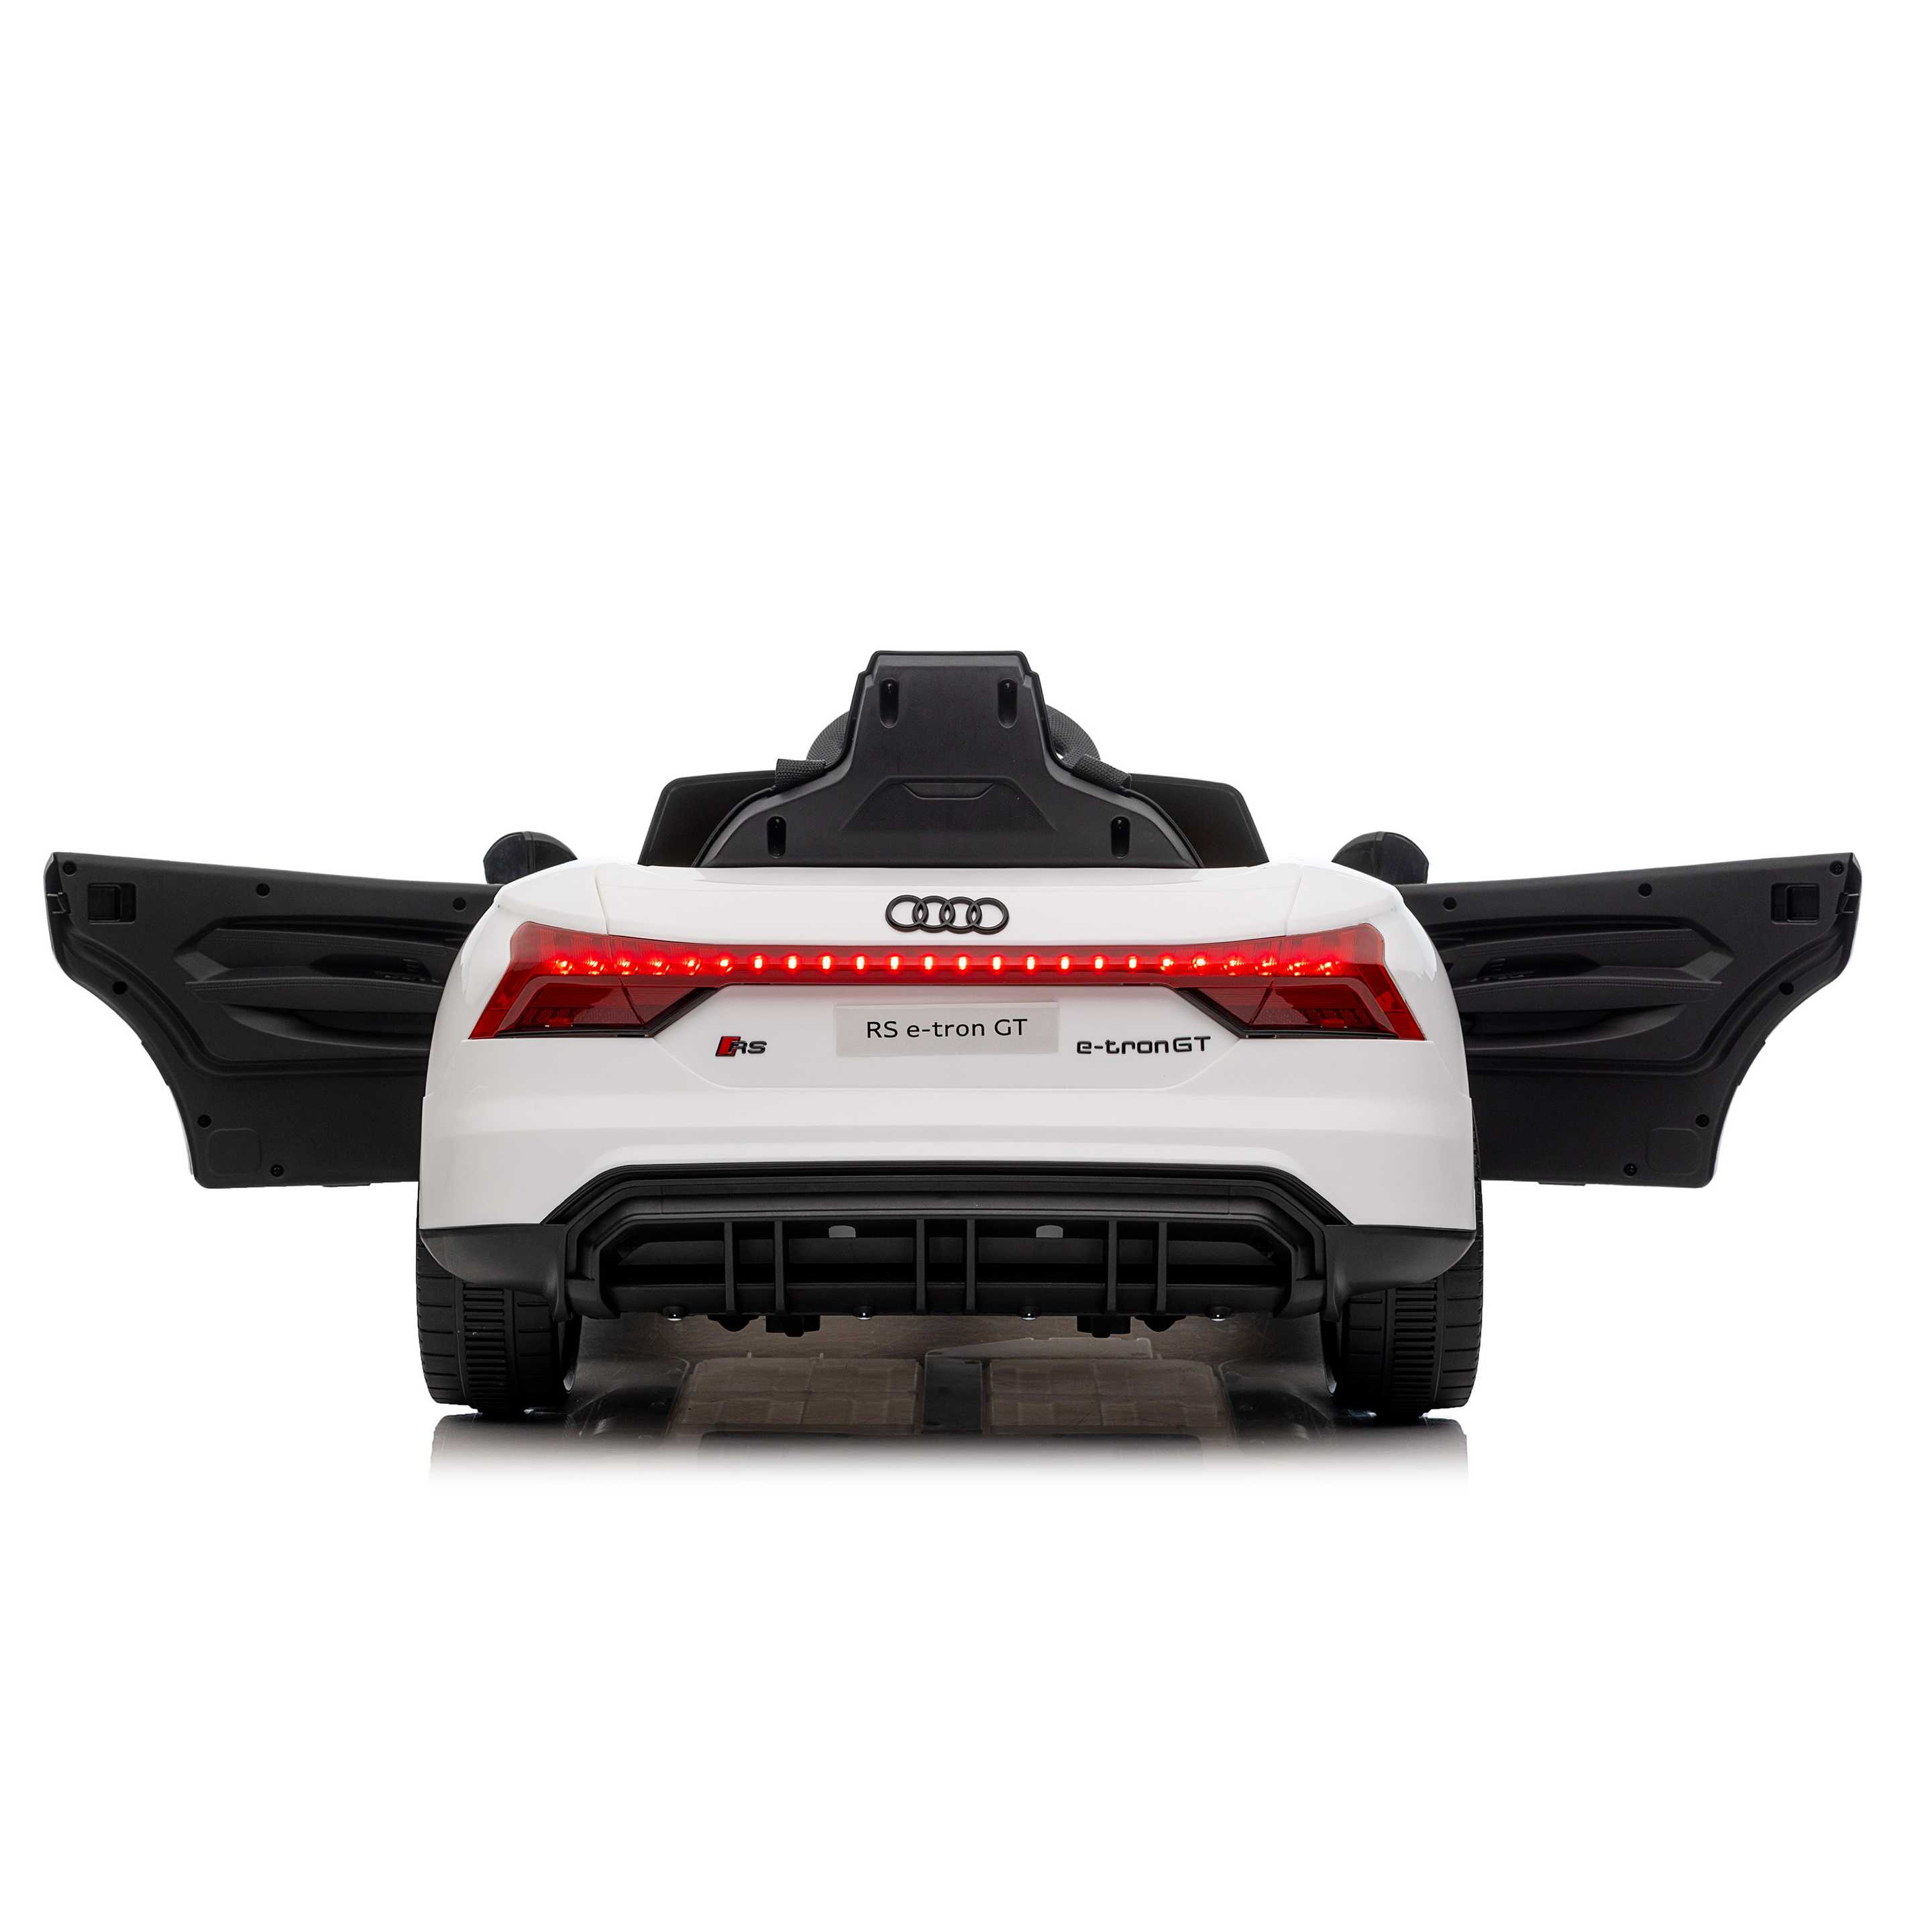 Elektrischer Audi RS eTron GT für Kinder a 12V - 15